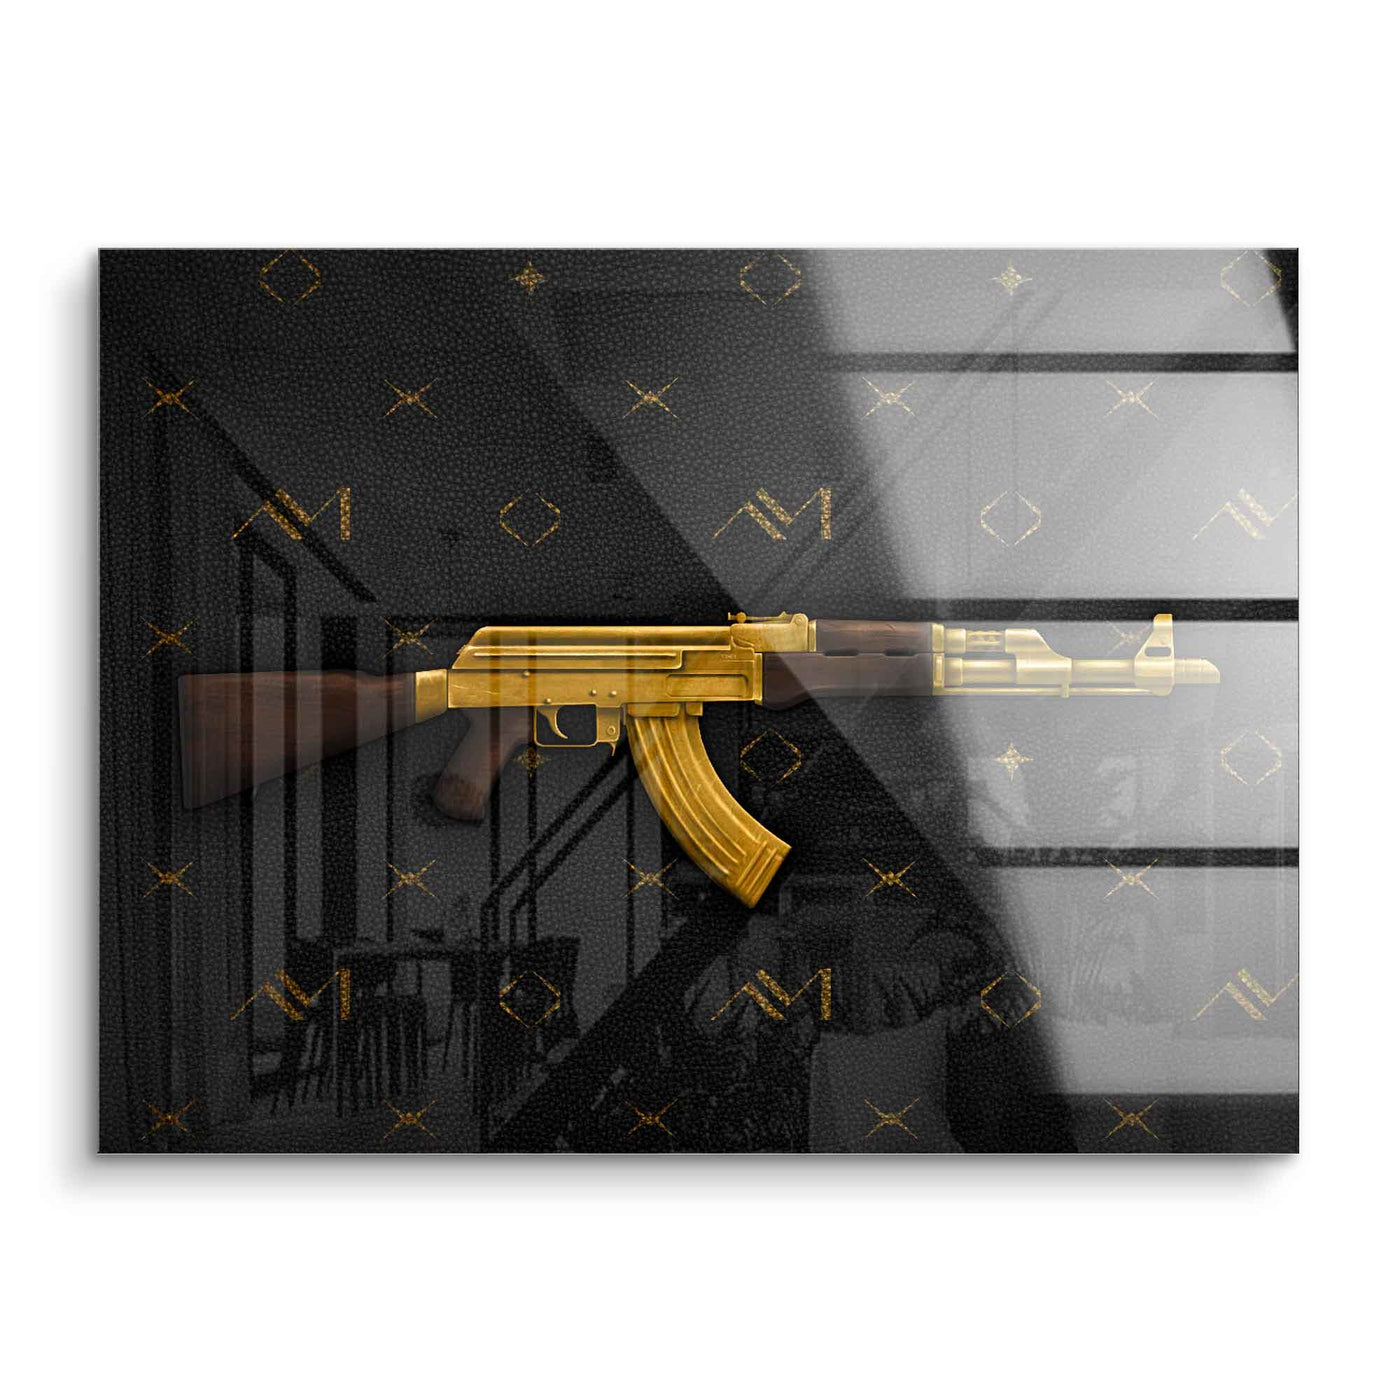 AK 47 d'or